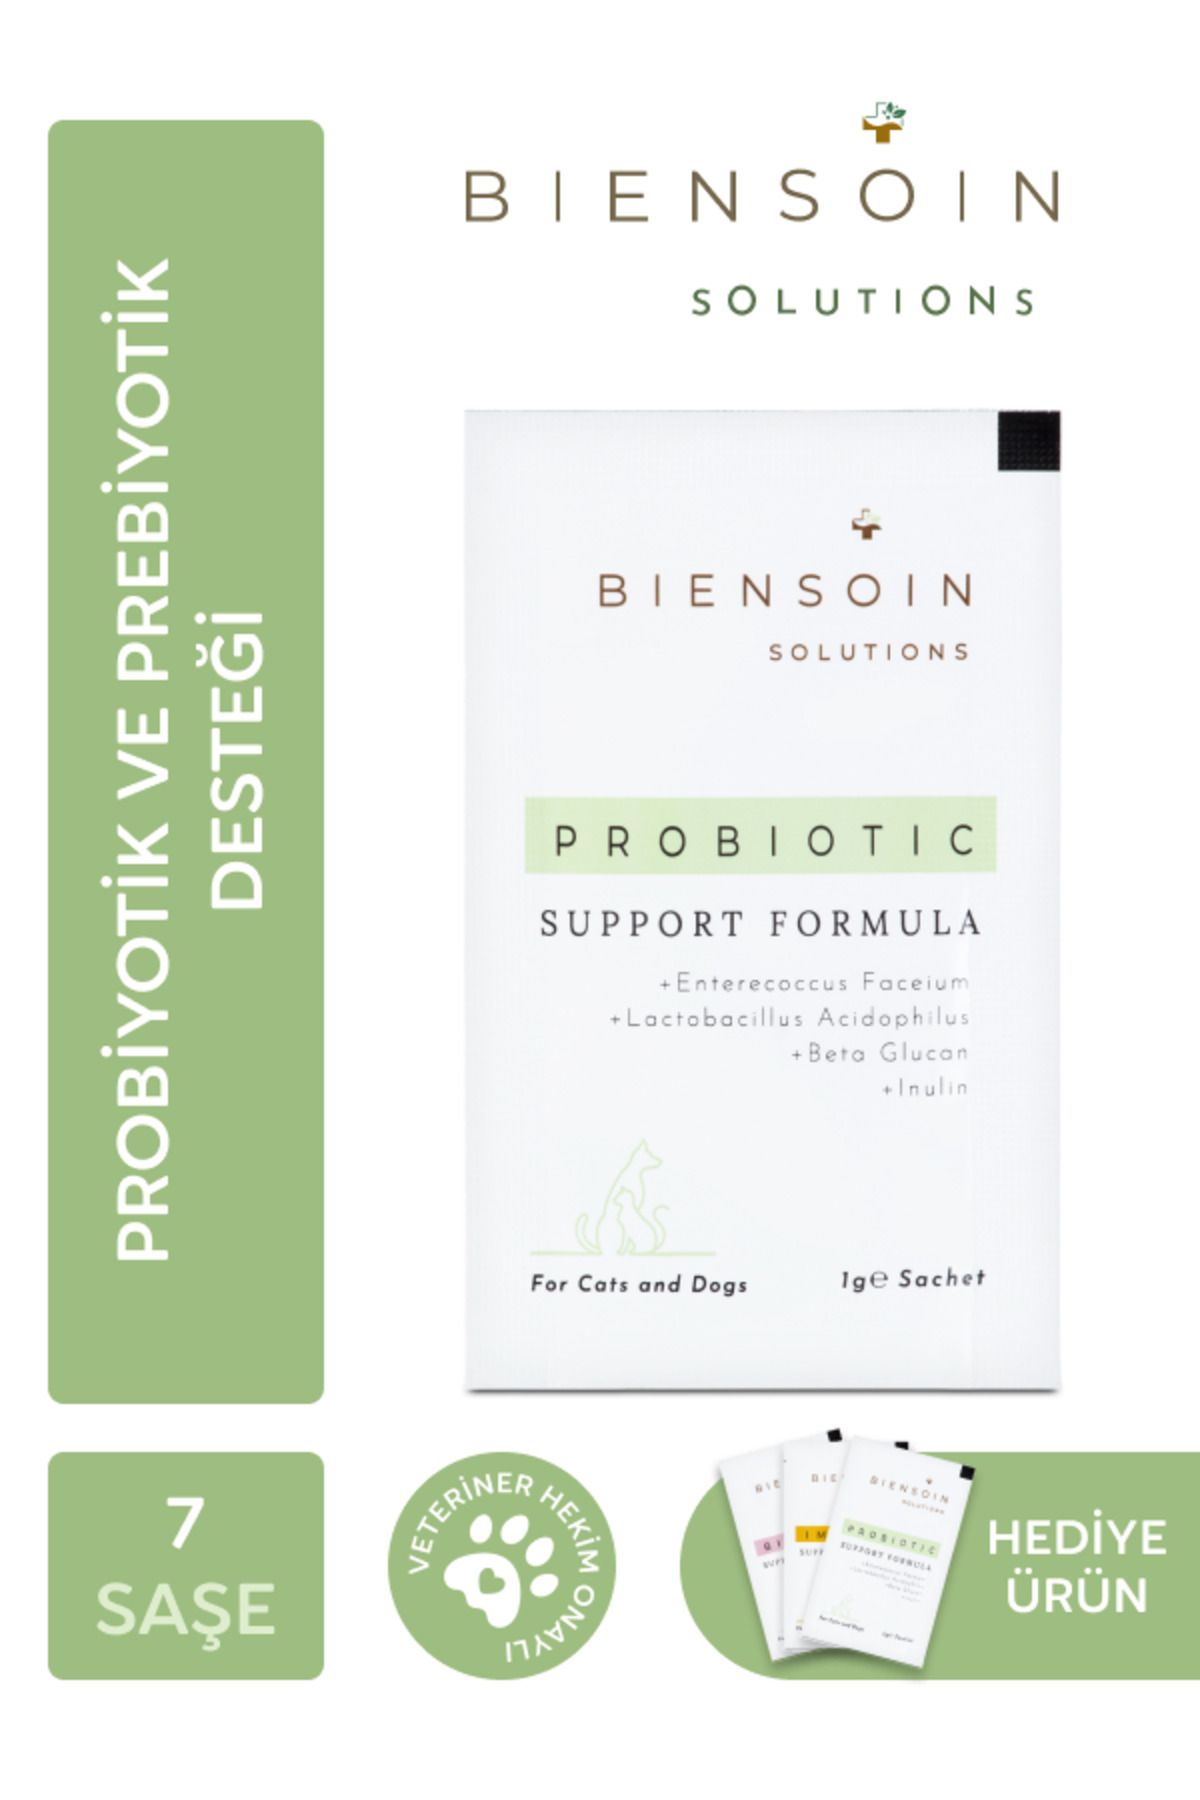 Biensoin Solutions Köpek Bağırsak Ve Sindirim Düzenleyici Probiyotik Prebiyotik Kolay Tüketilebilir 7x1gr Toz Saşe